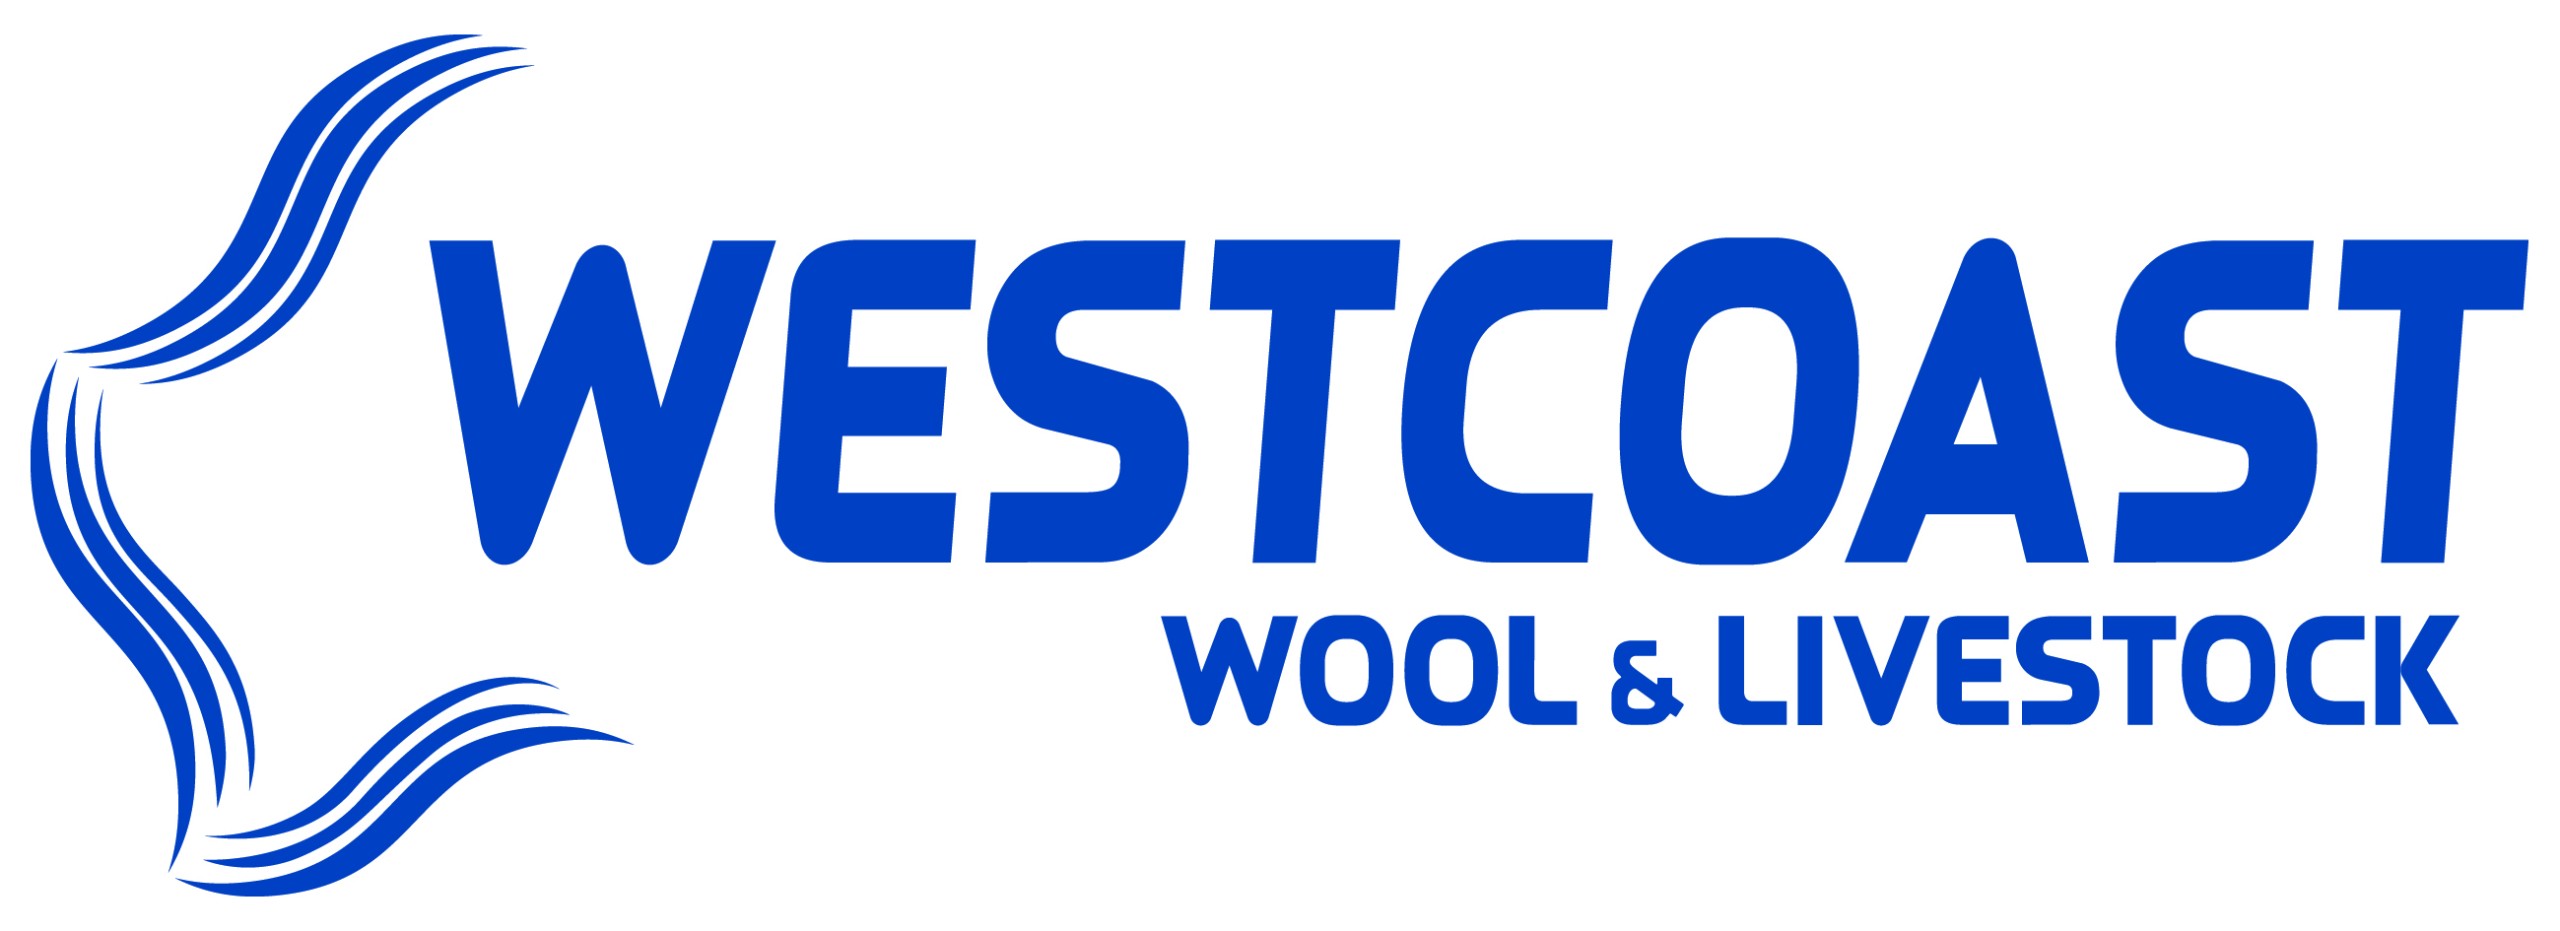 Westcoast Wool & Livestock Back To The Wheatbelt Sheep Sale